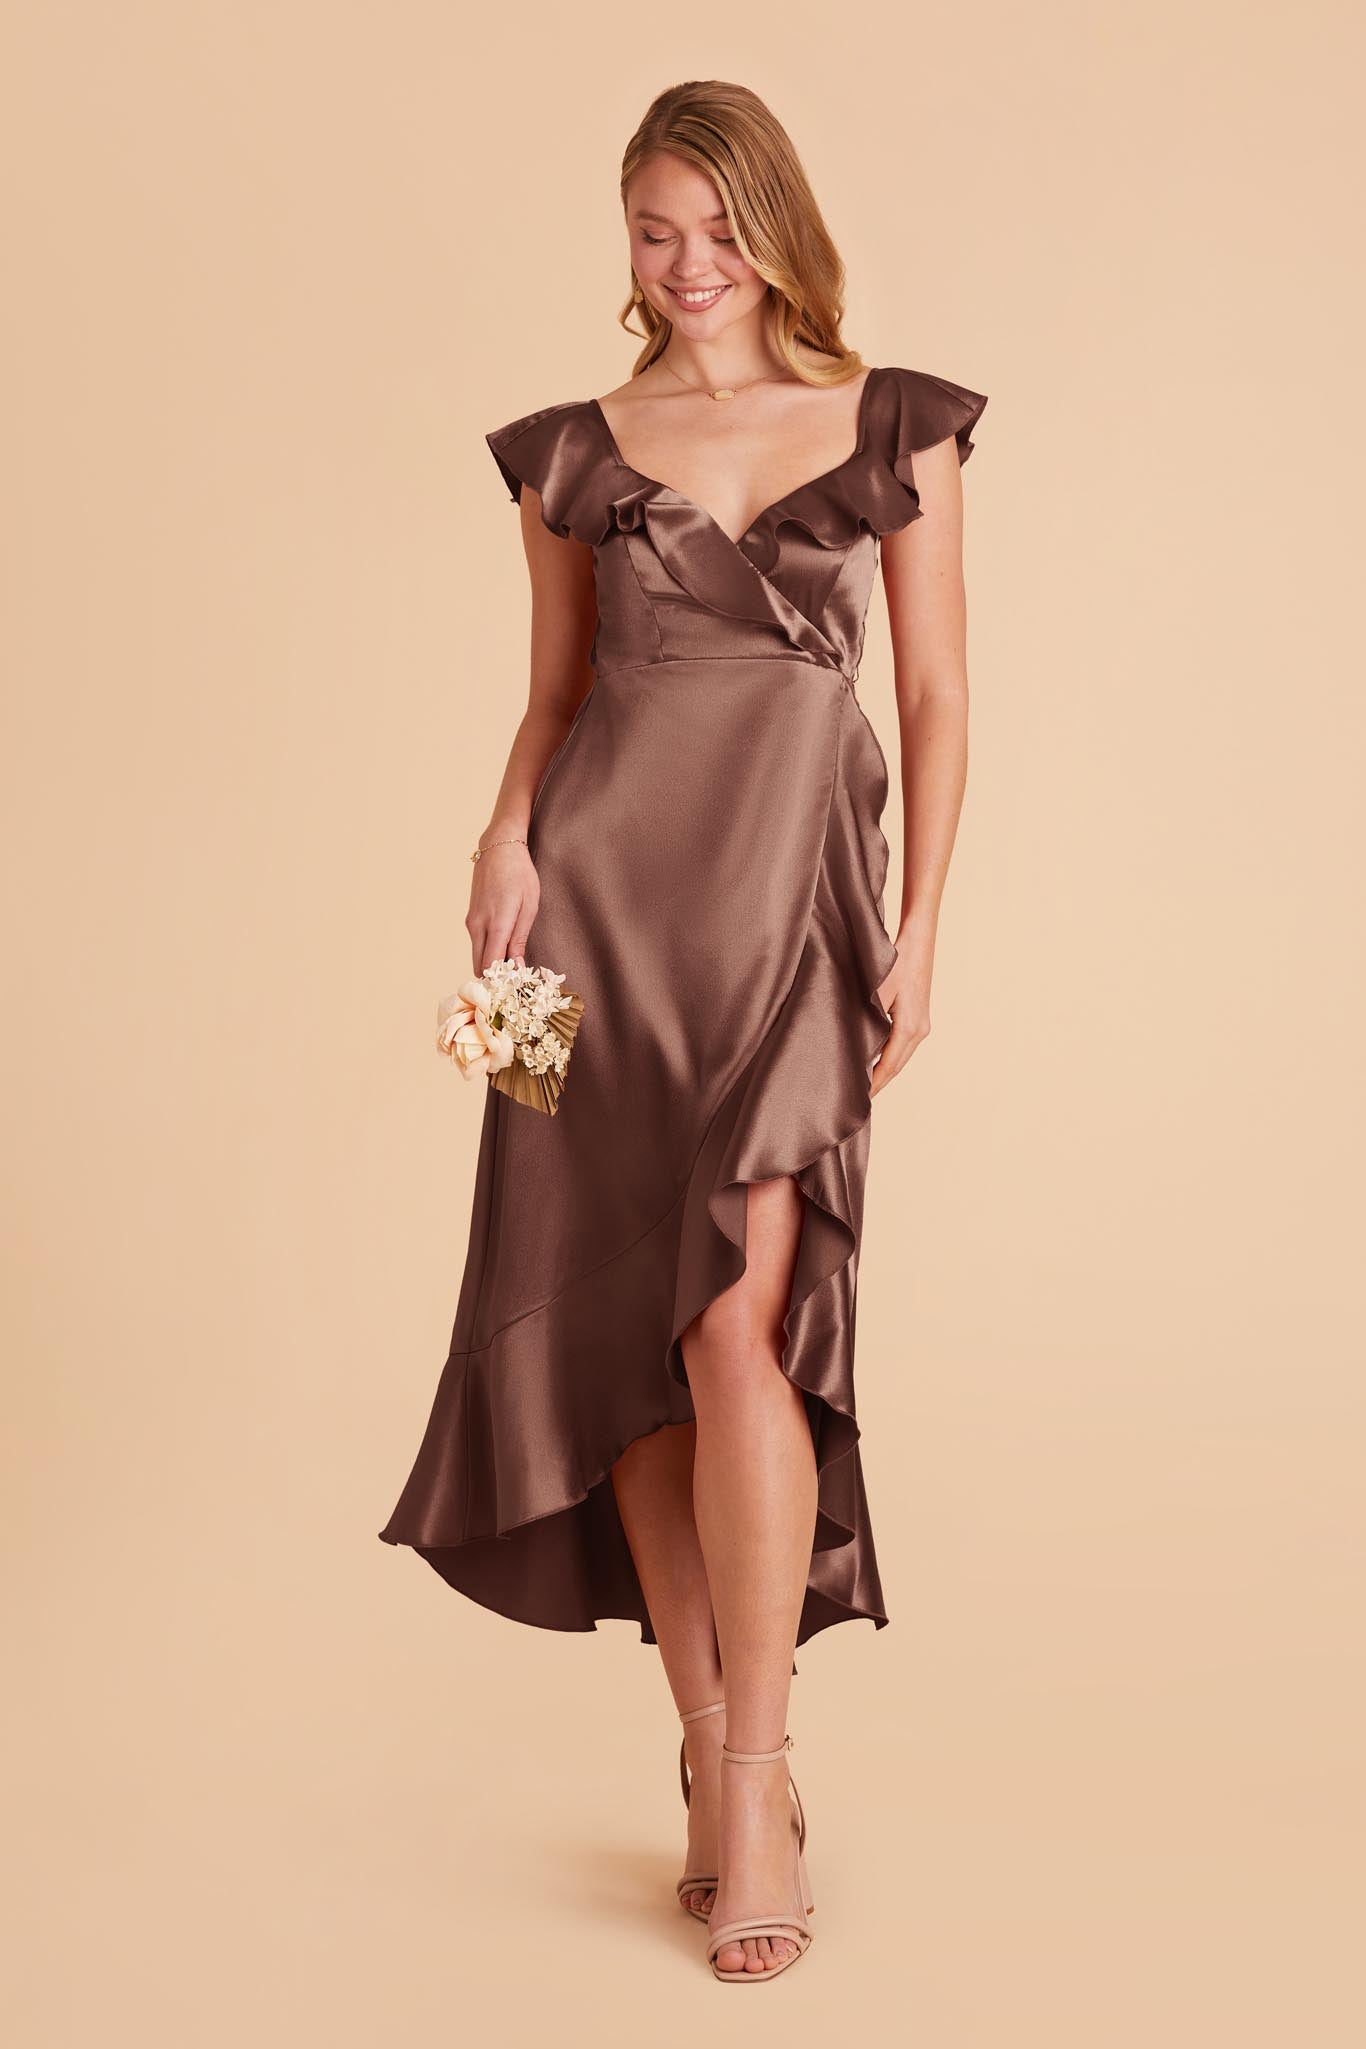 Chocolate Brown James Satin Midi Dress by Birdy Grey